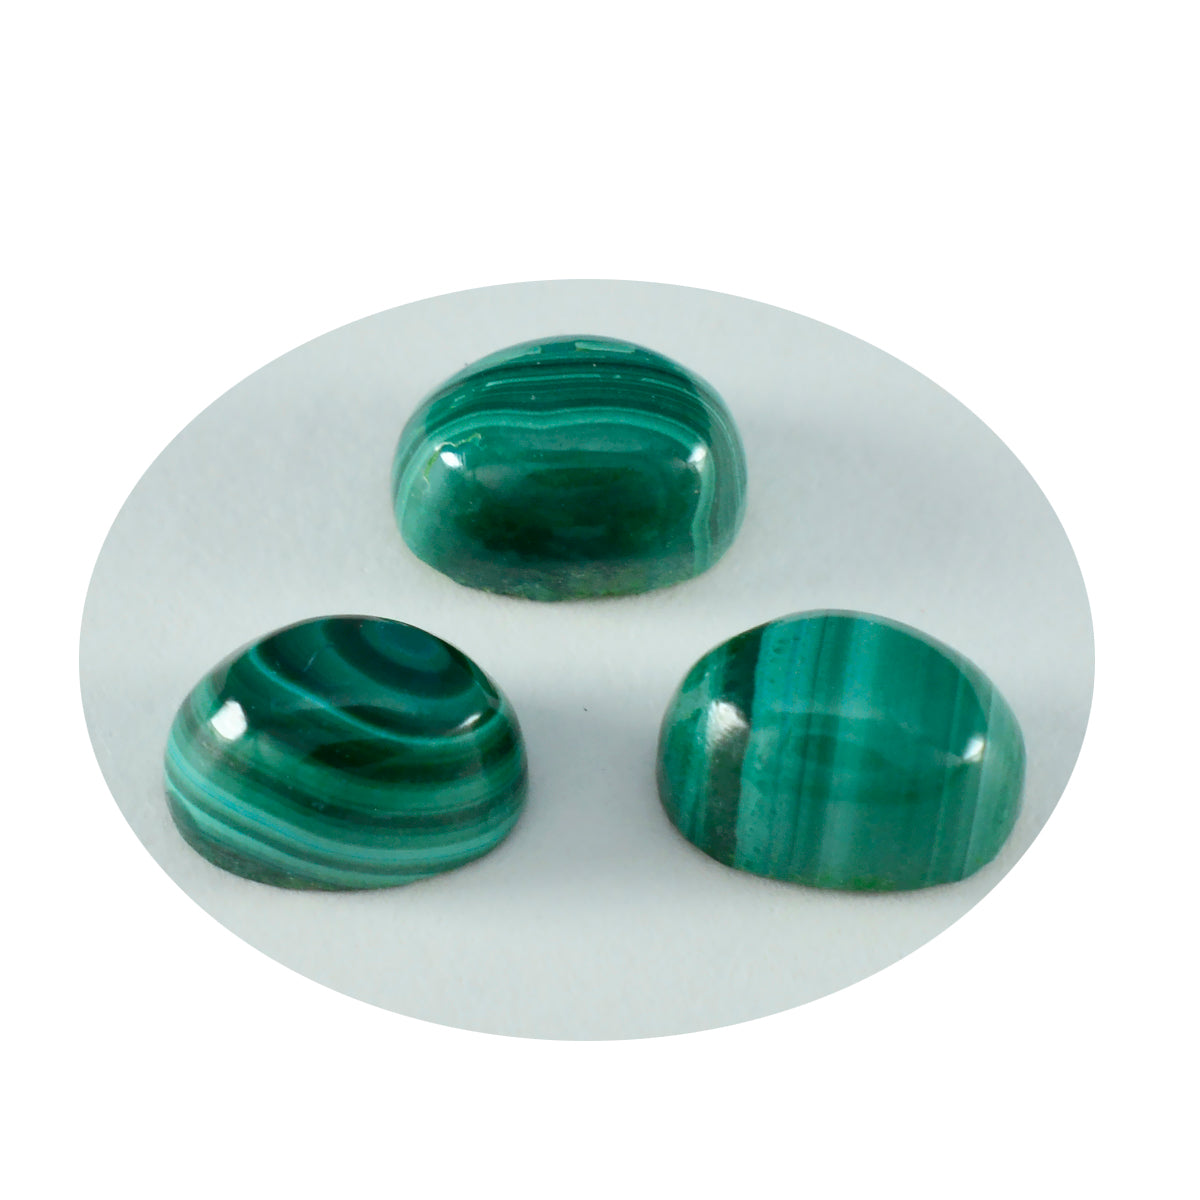 riyogems 1 pieza cabujón de malaquita verde 3x5 mm forma ovalada piedra preciosa suelta de maravillosa calidad